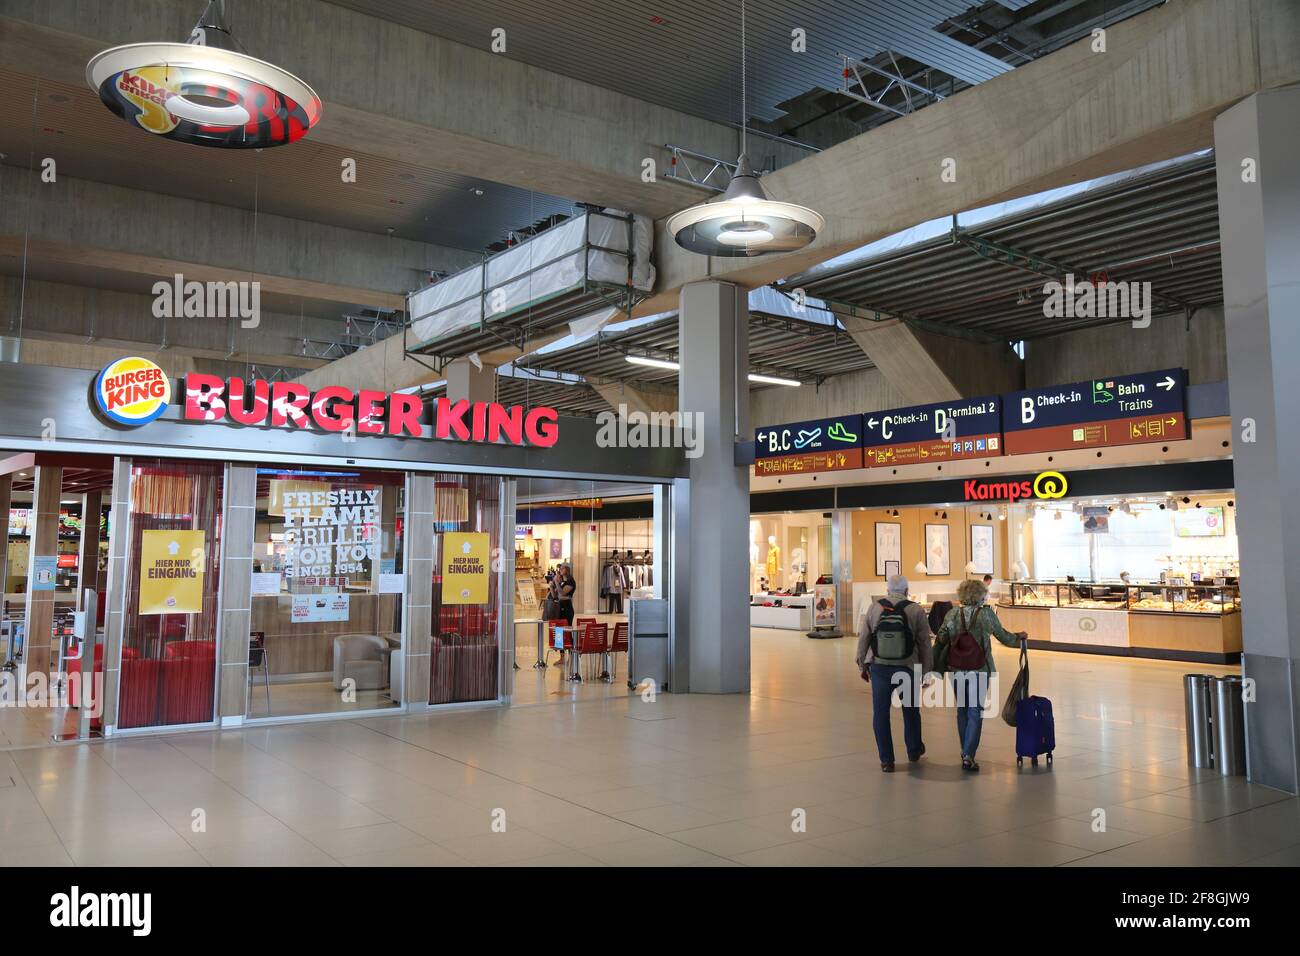 COLOGNE, ALLEMAGNE - 22 SEPTEMBRE 2020 : Restaurant de restauration rapide Burger King de l'aéroport de Cologne Bonn en Allemagne. L'aéroport de Cologne est le 6ème aéroport le plus fréquenté de Banque D'Images